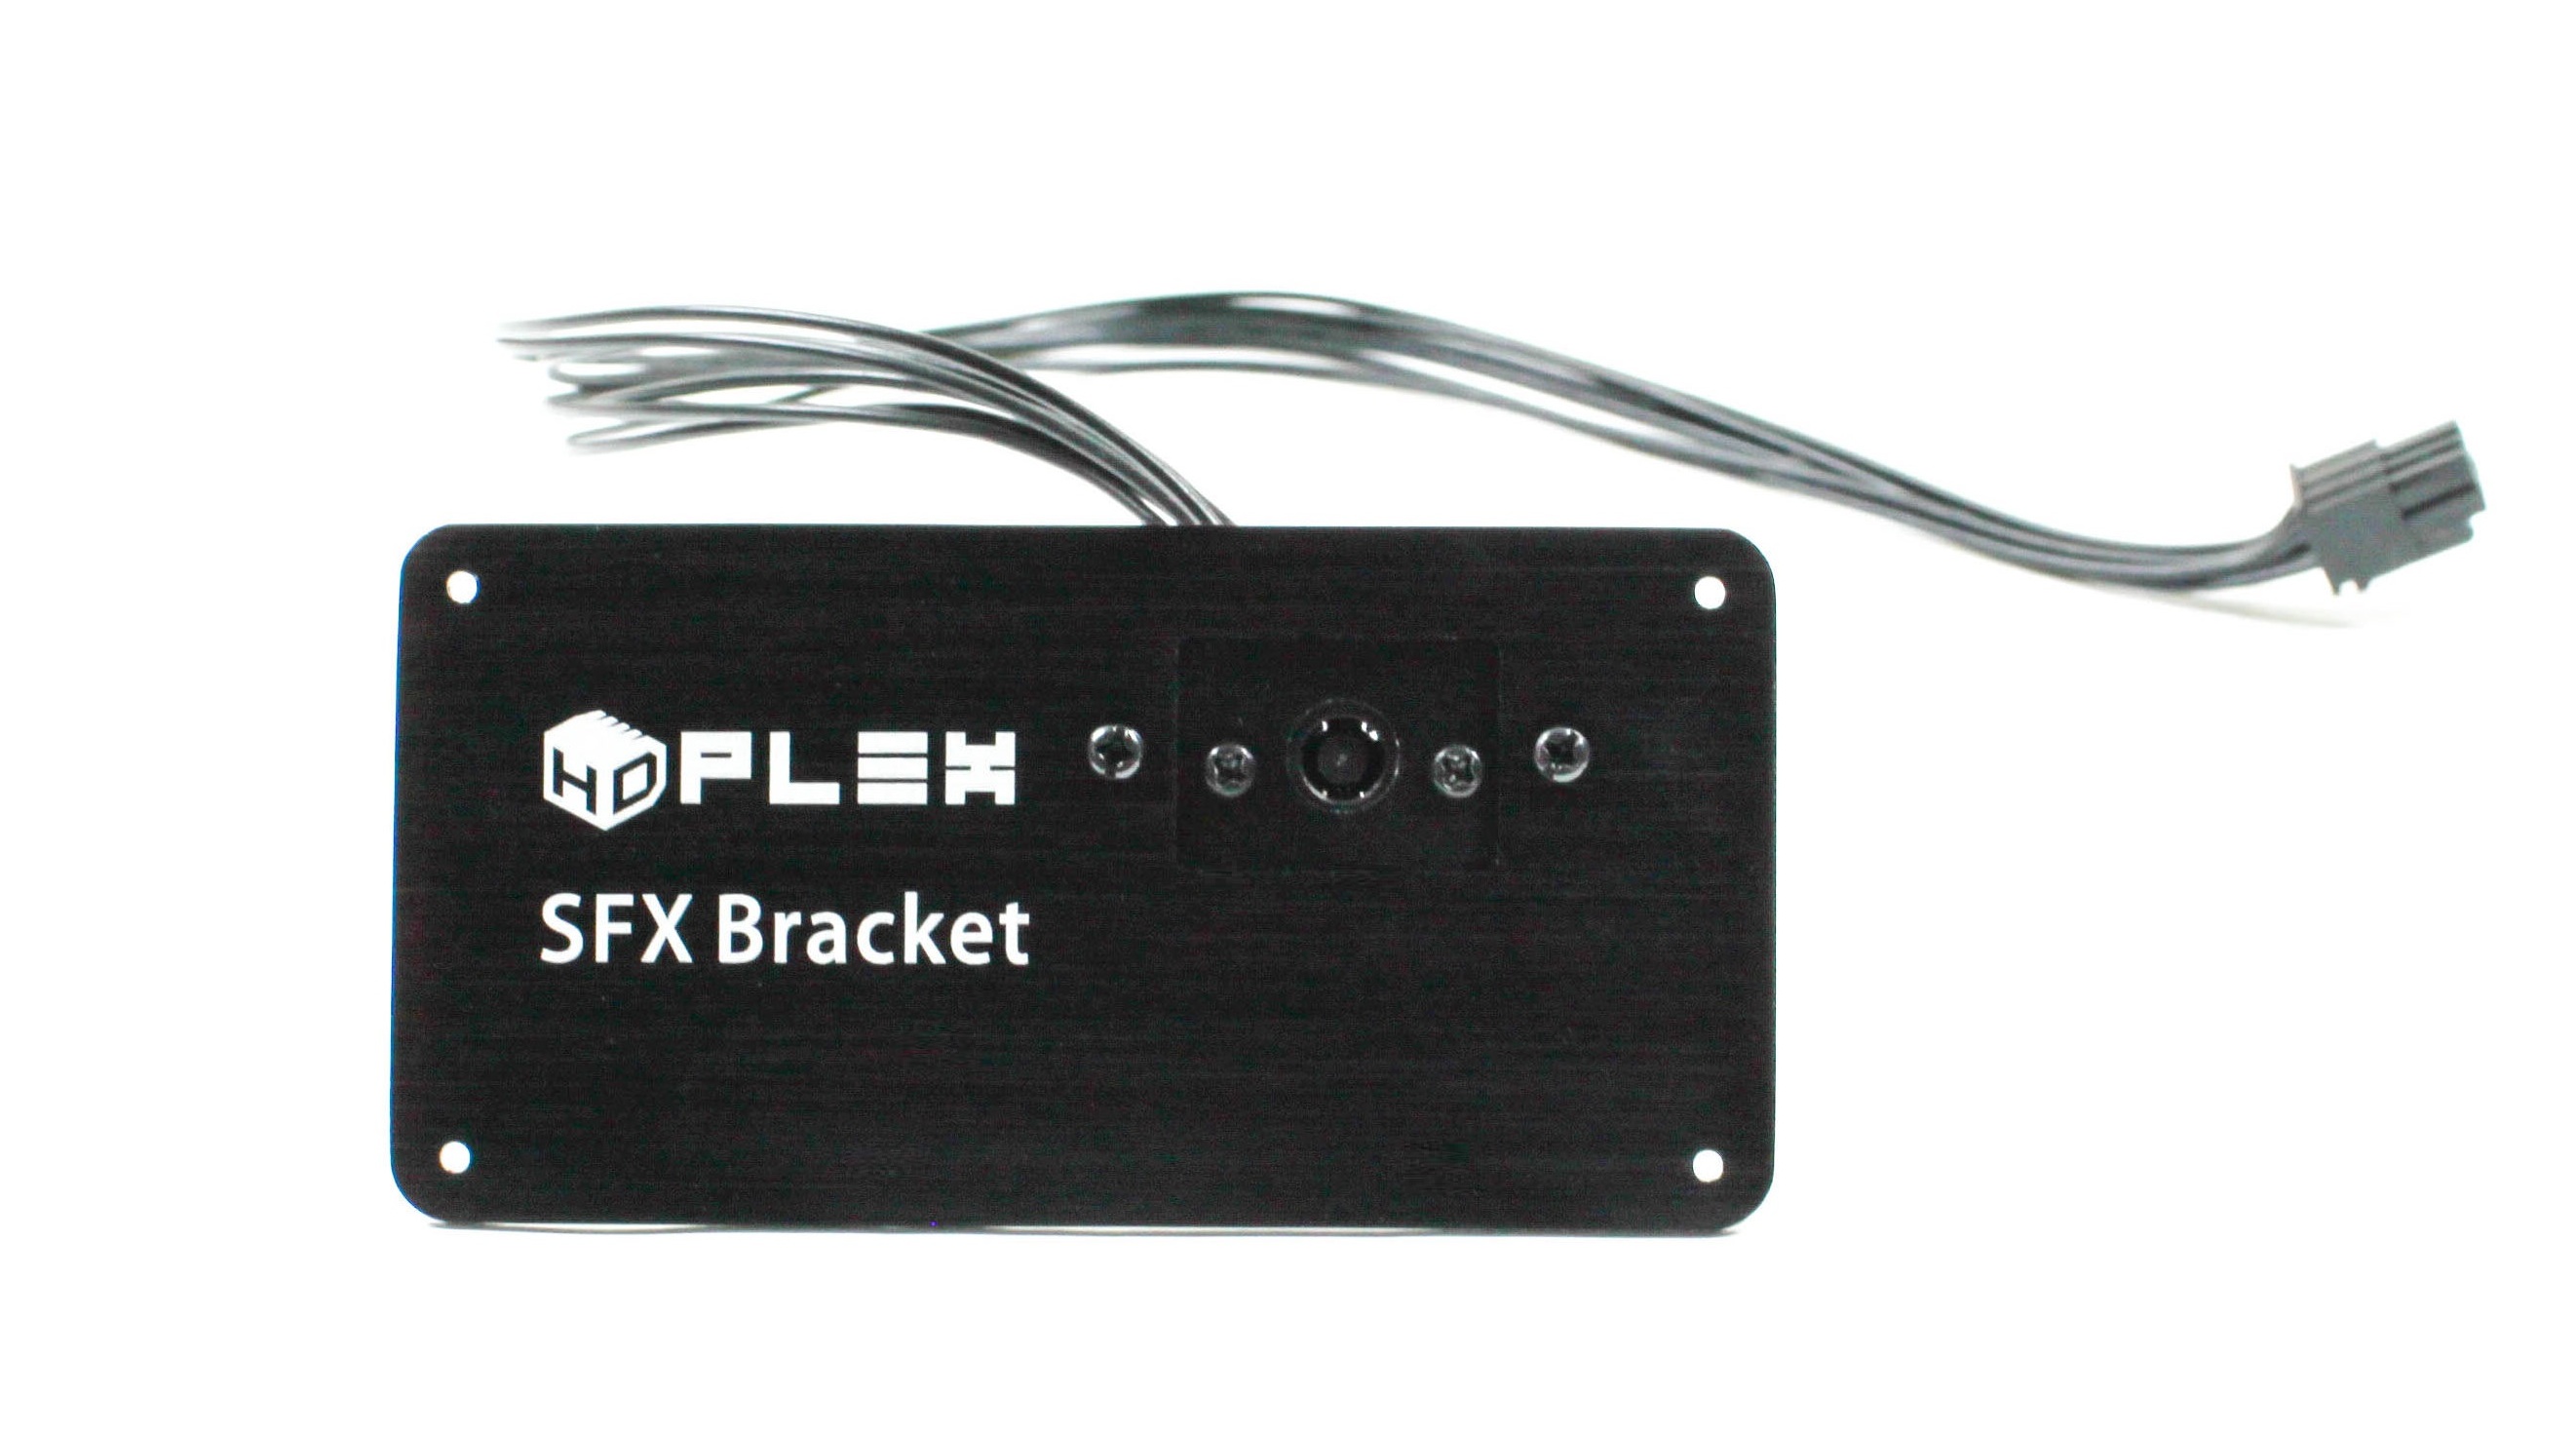 HDPLEX SFX Bracket